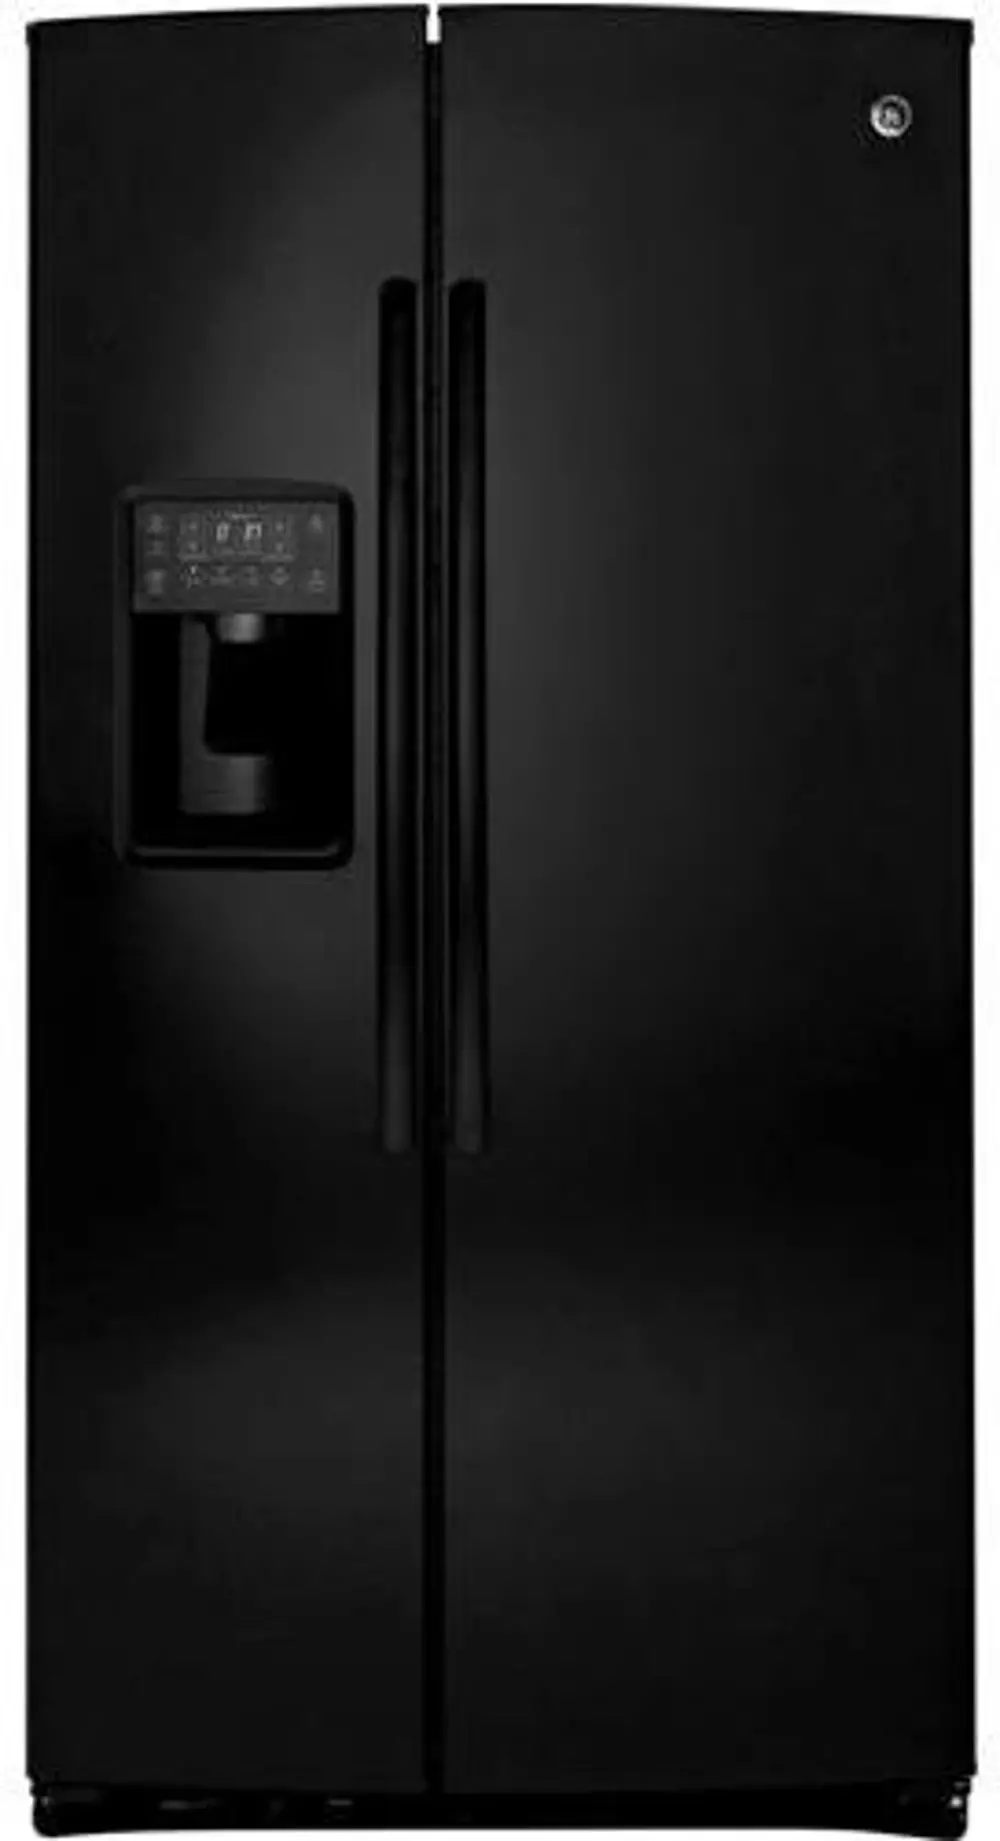 PSE26KGEBB GE 26 Cu. Ft. Side-by-Side Refrigerator-1